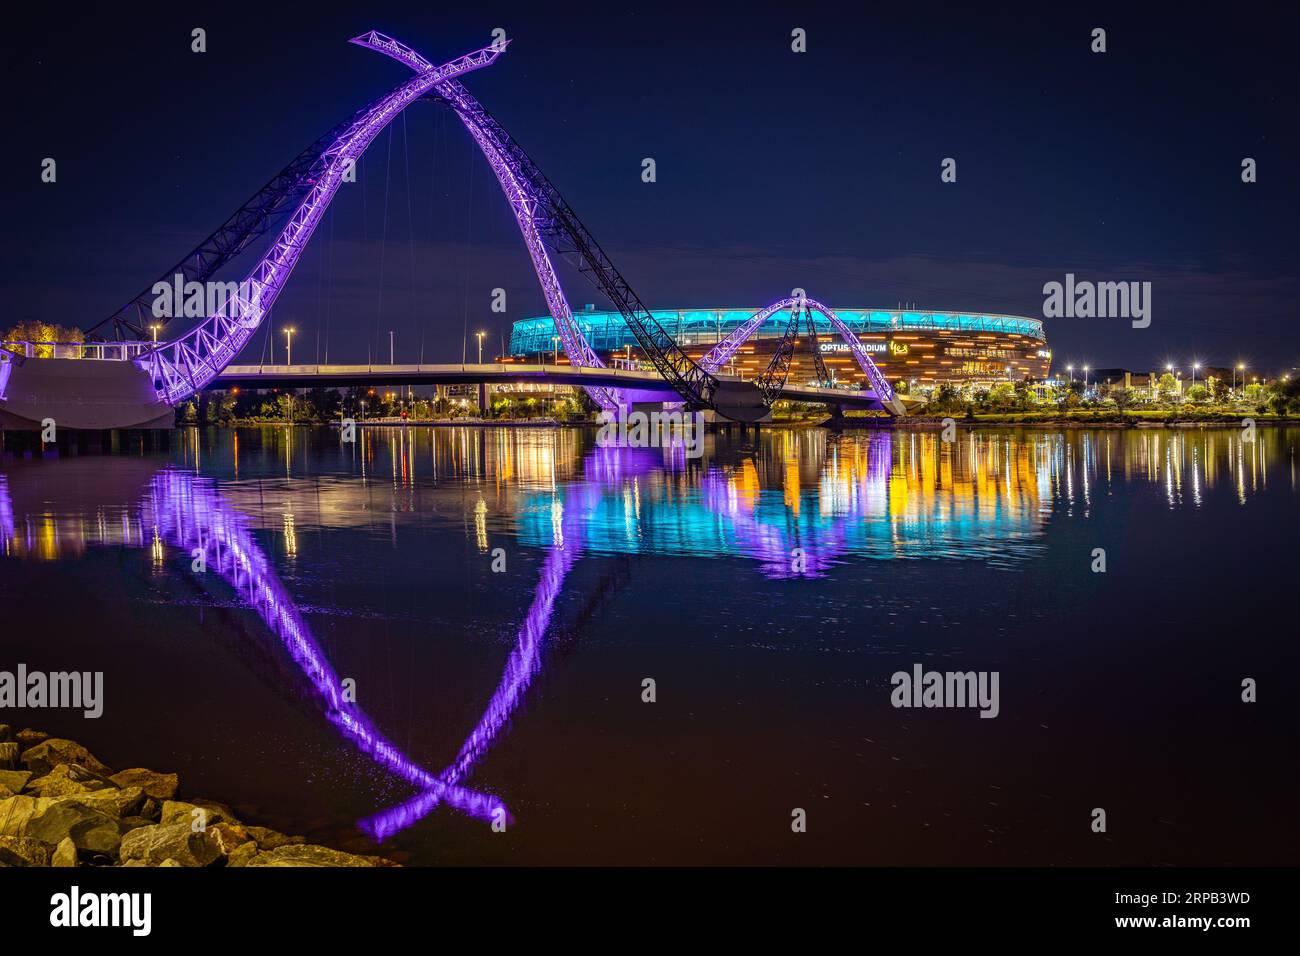 Perth, WA, Australia - Matagarup Bridge and Optus stadium illuminated at night Stock Photo